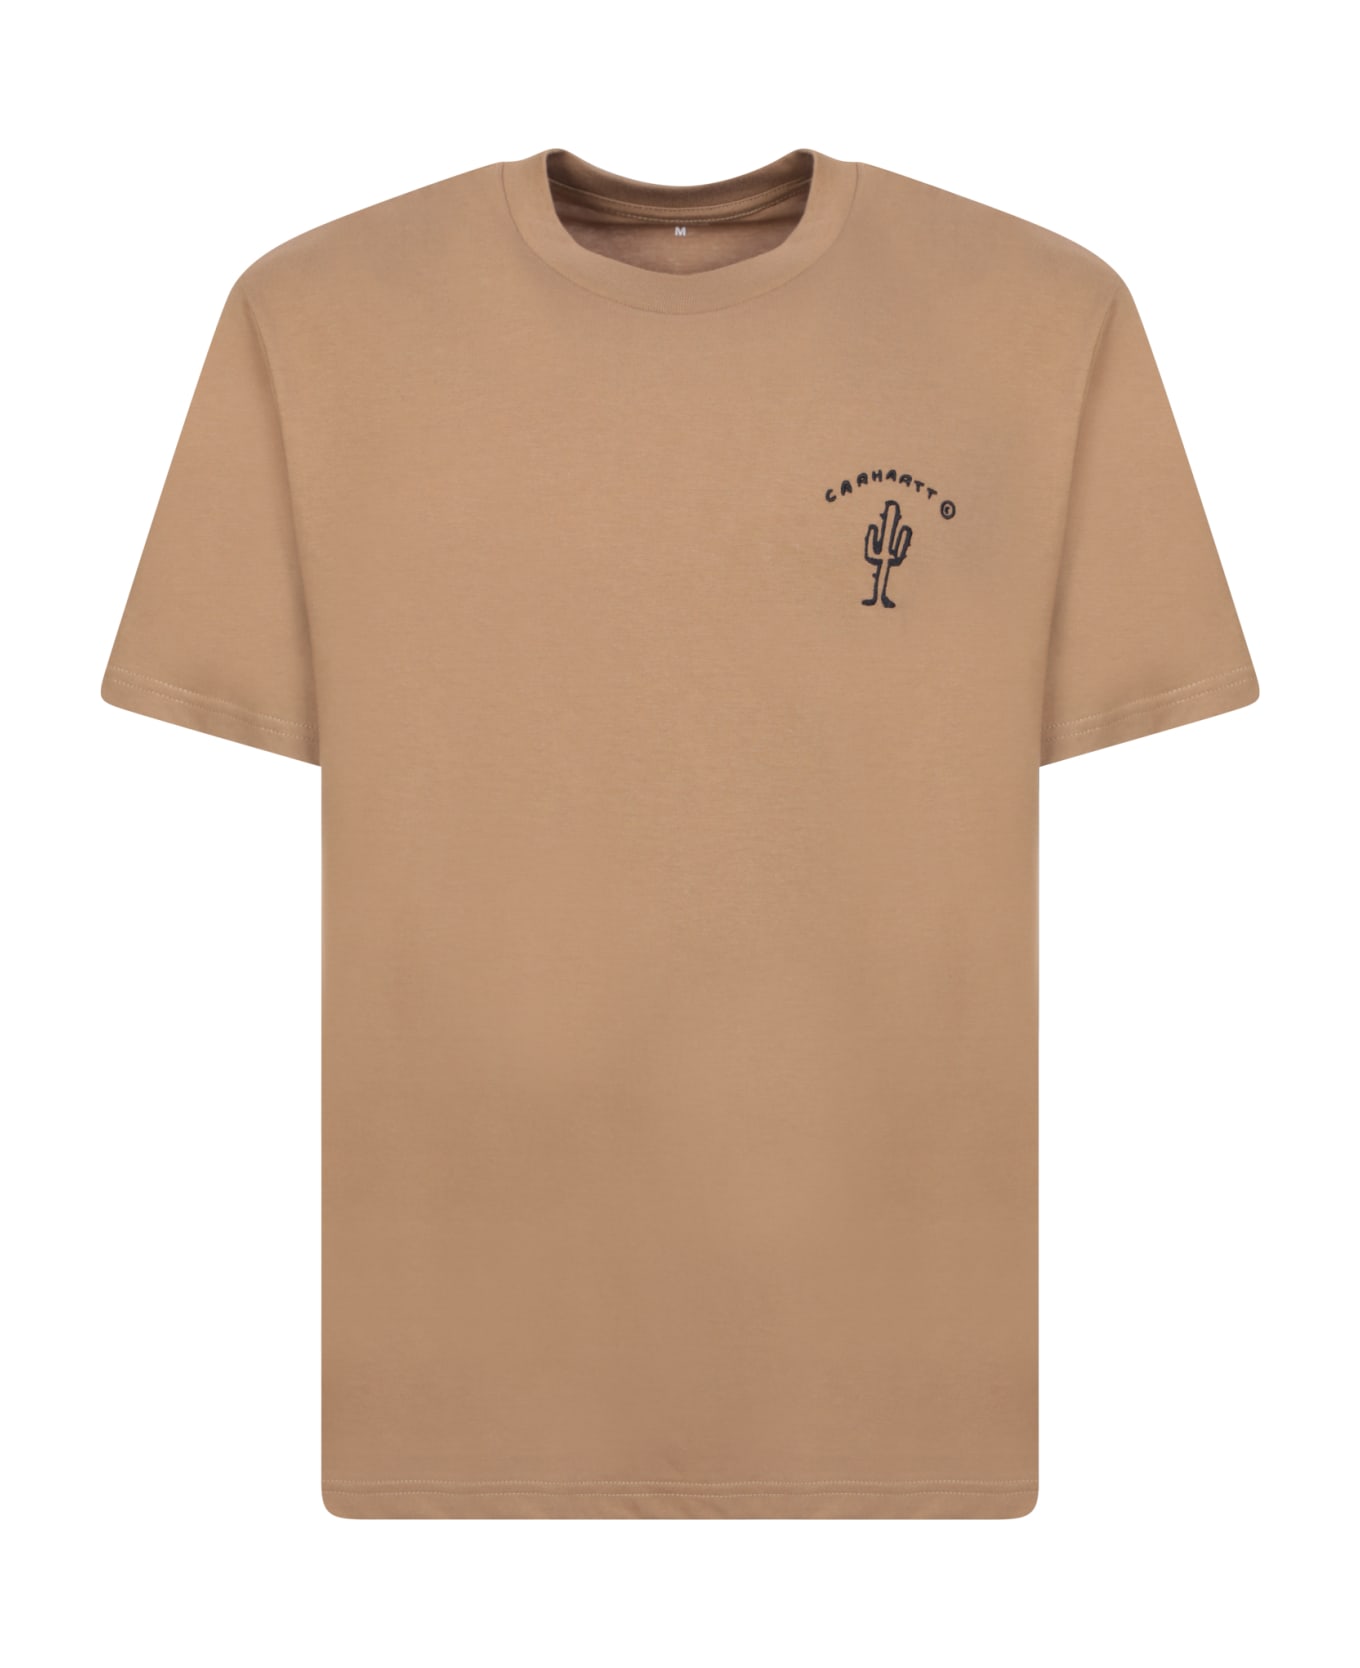 Carhartt Logo Print T-shirt Beige - Brown